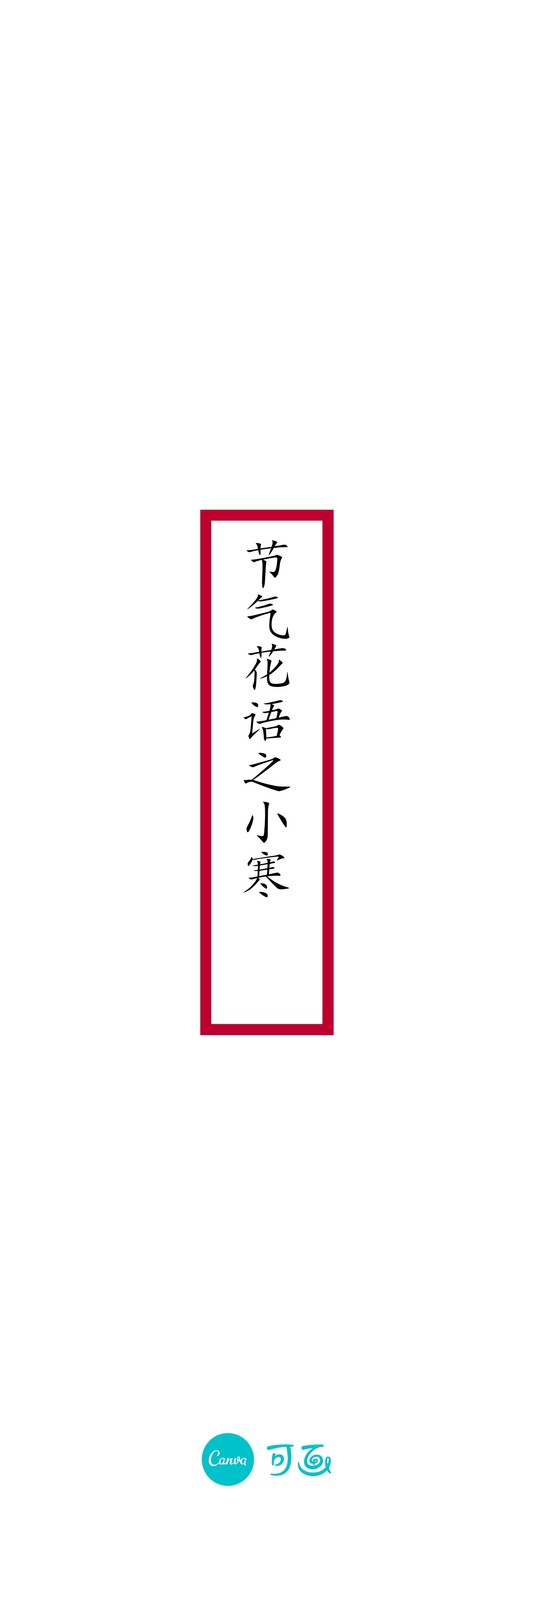 白红色水仙花小寒节气简洁中文书签